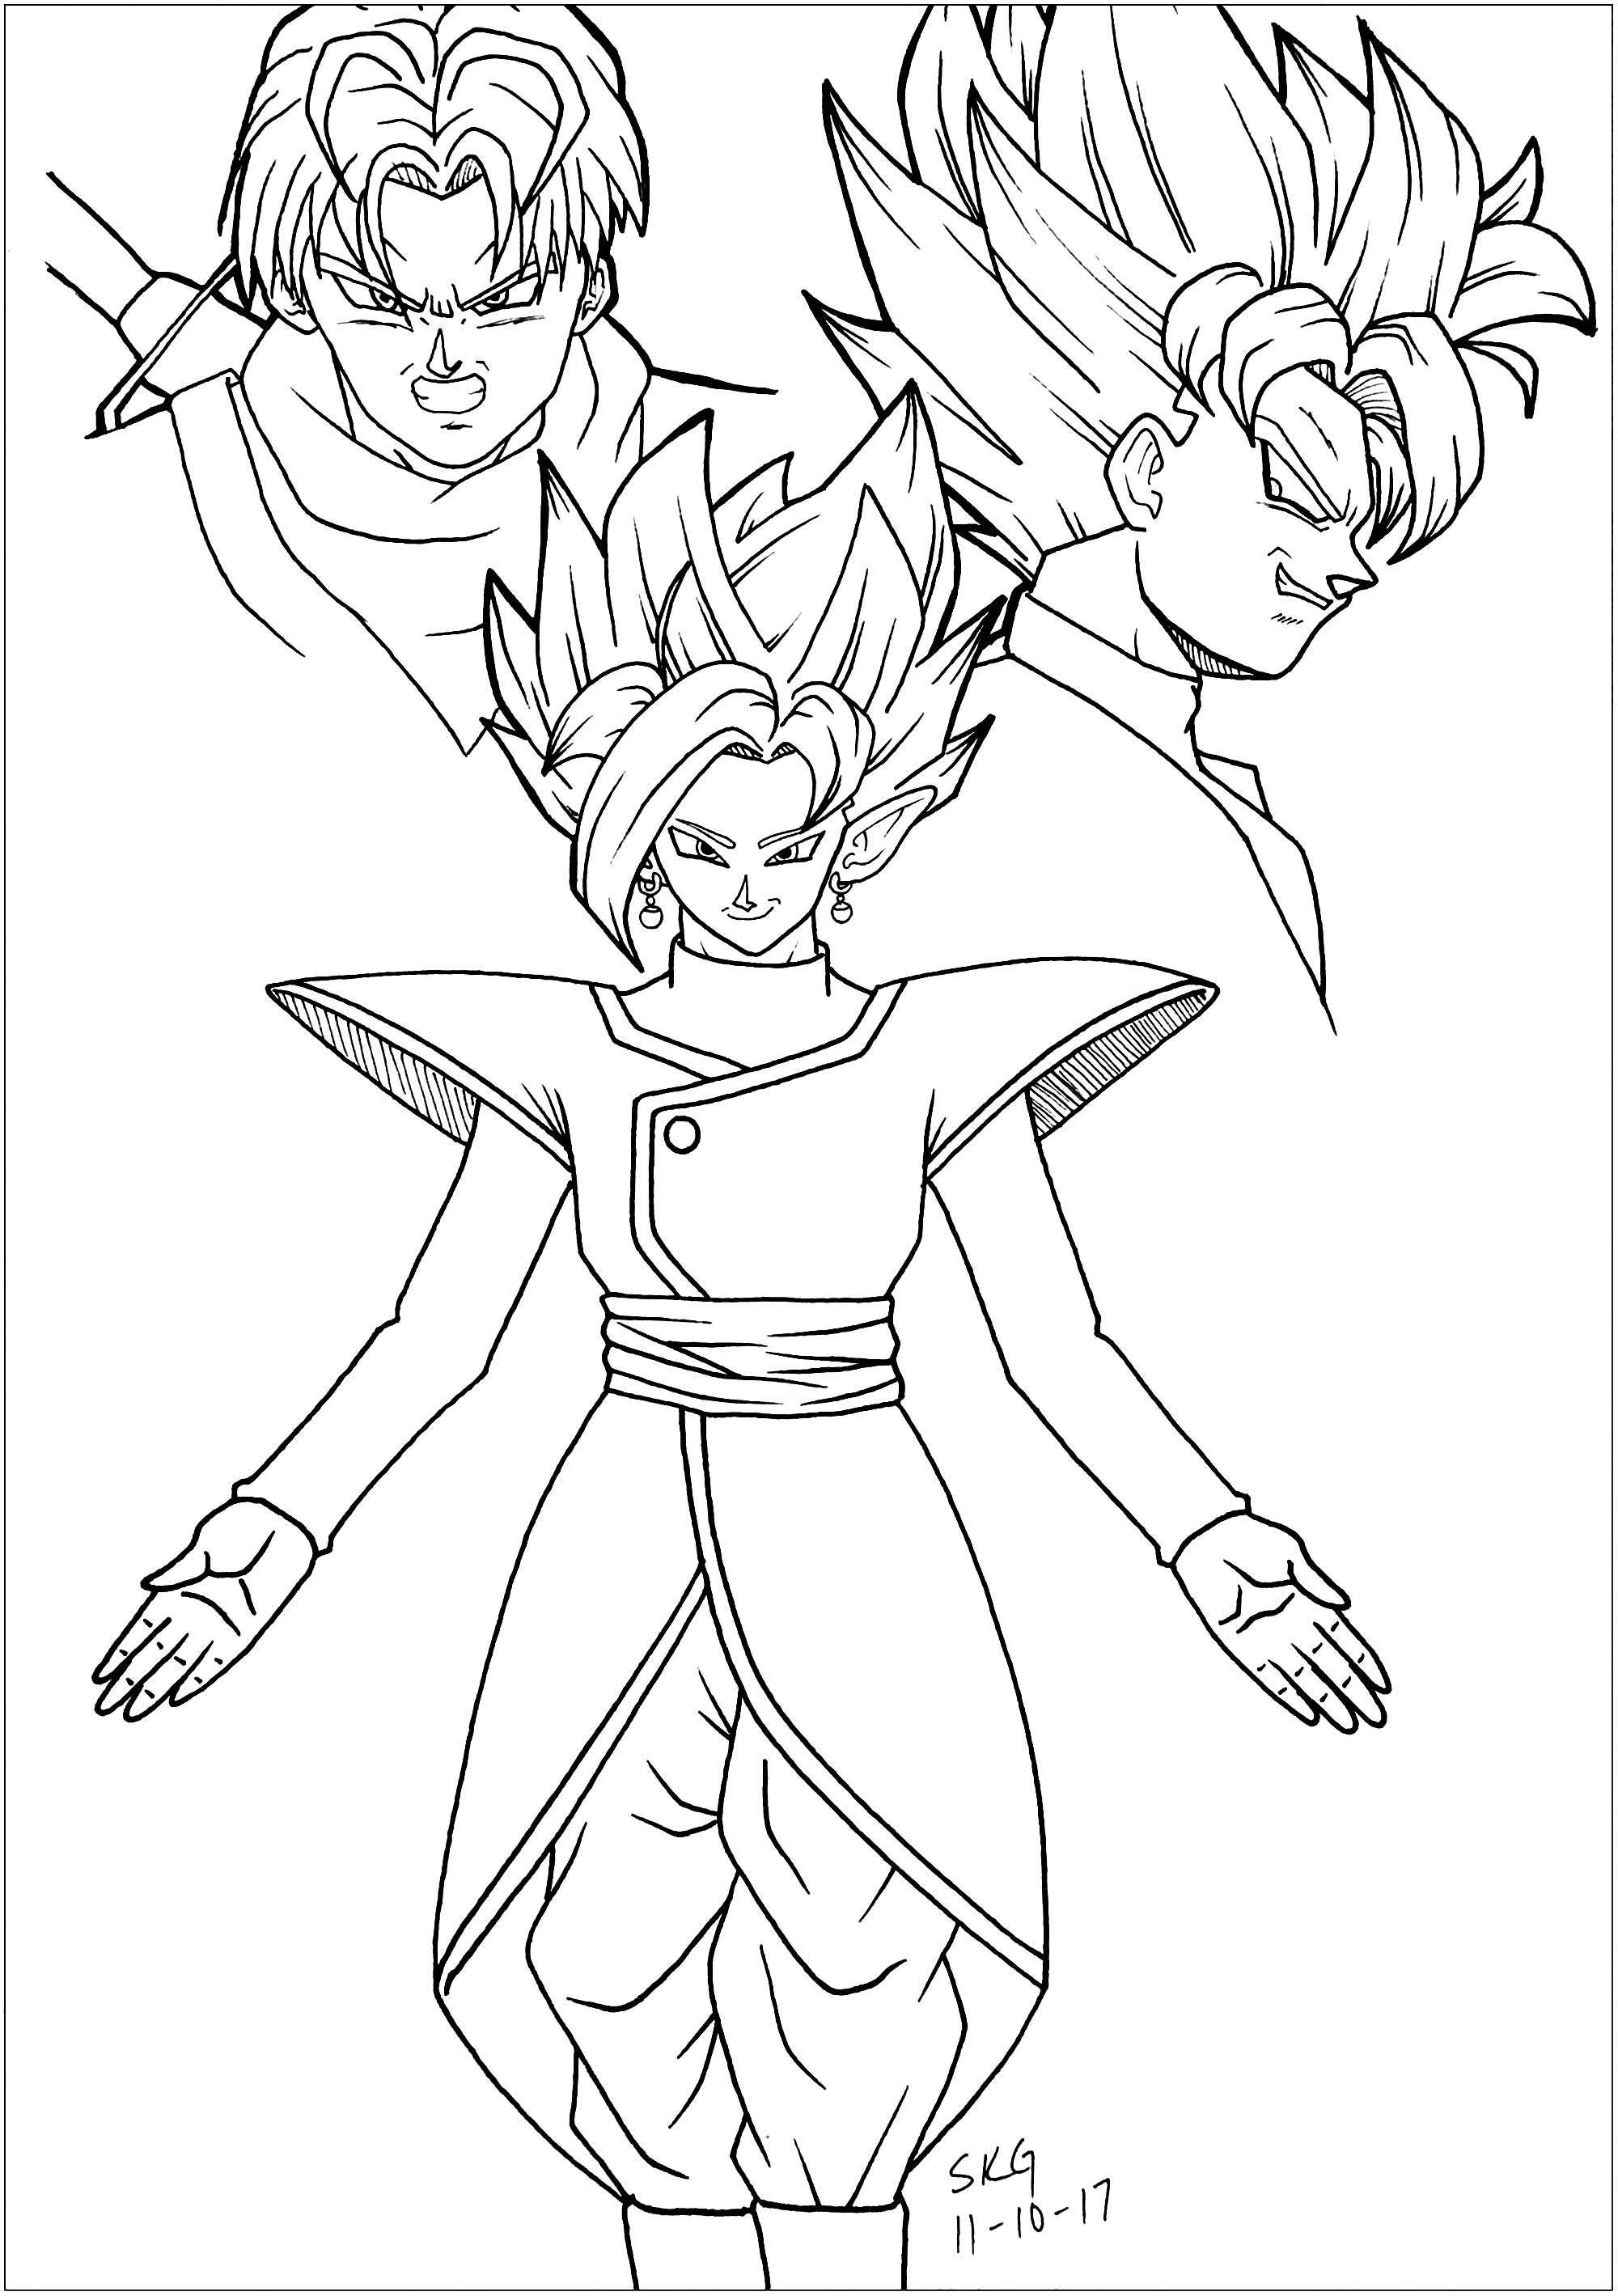 Dragon Ball Super para colorir com poucos detalhes para crianças: Goku Negro, Trunks e Zamasu